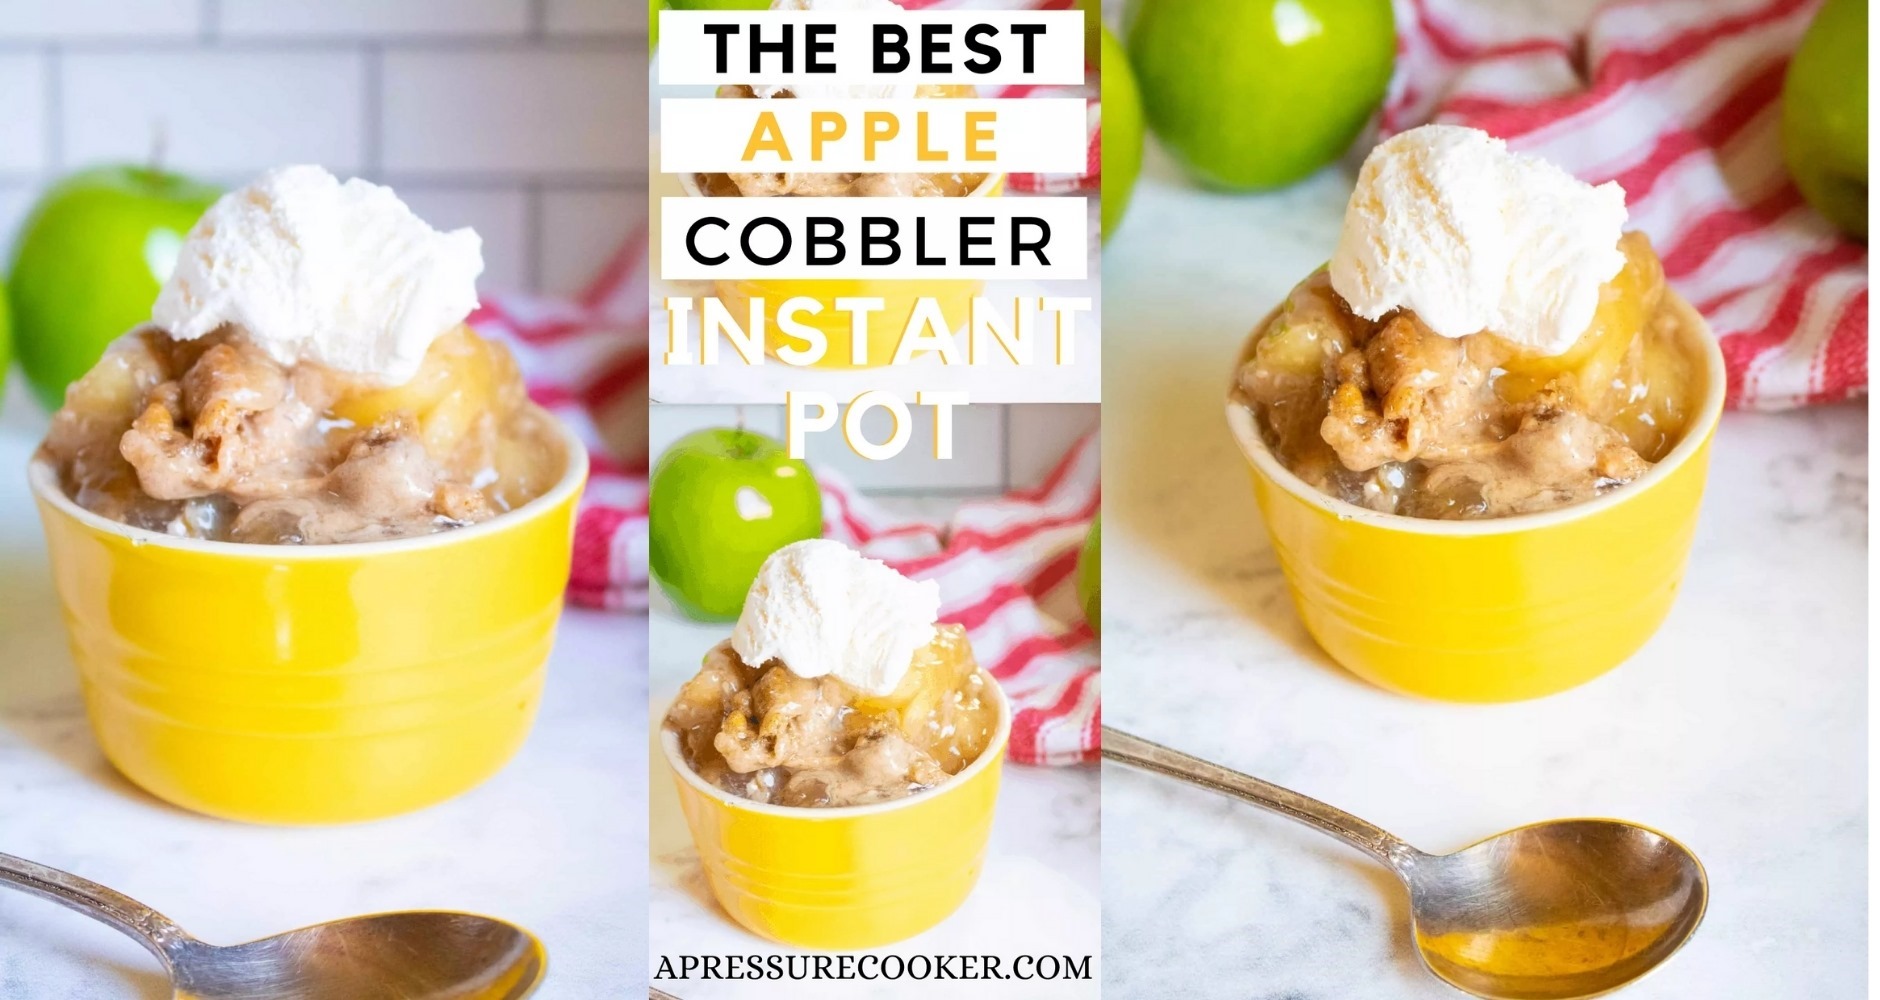 The Best Apple Cobbler Instant Pot